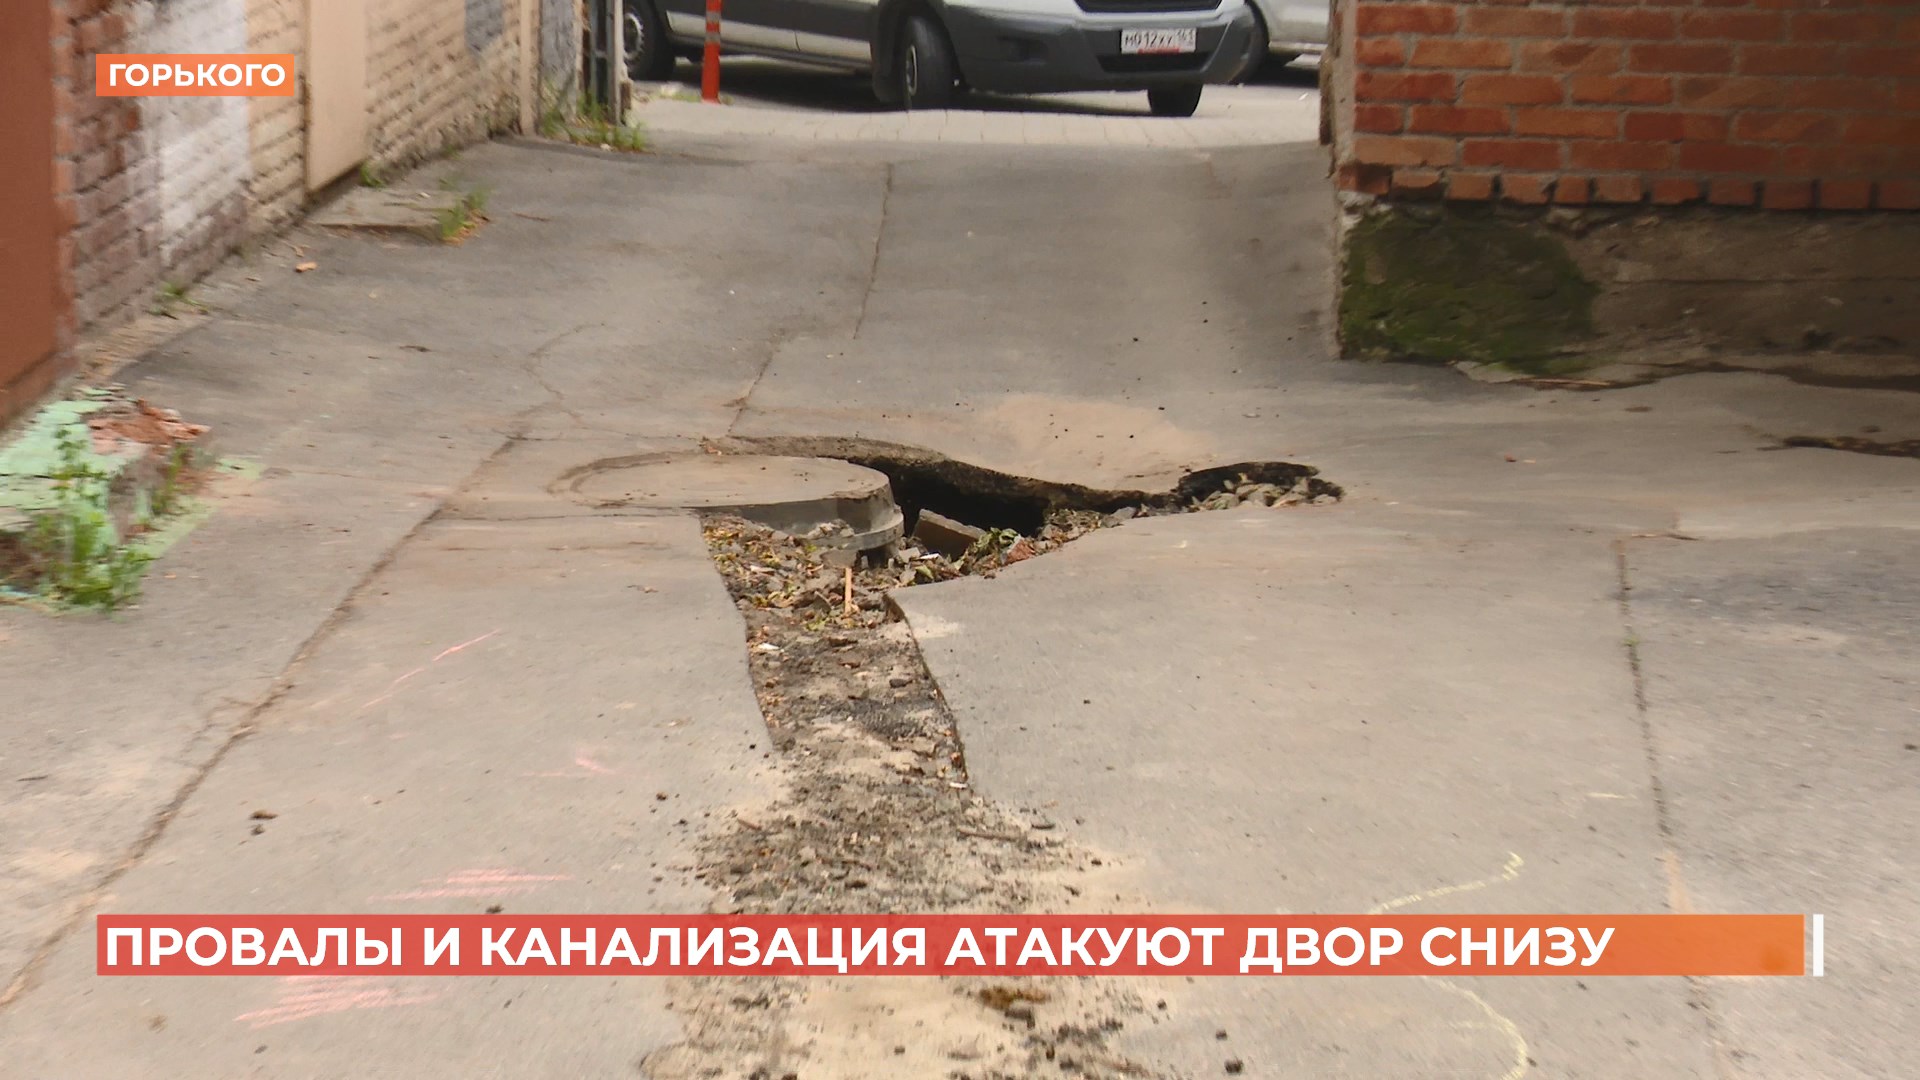 Борьба с ямами: жильцы дома на Горького страдают от провалов и канализации во дворе